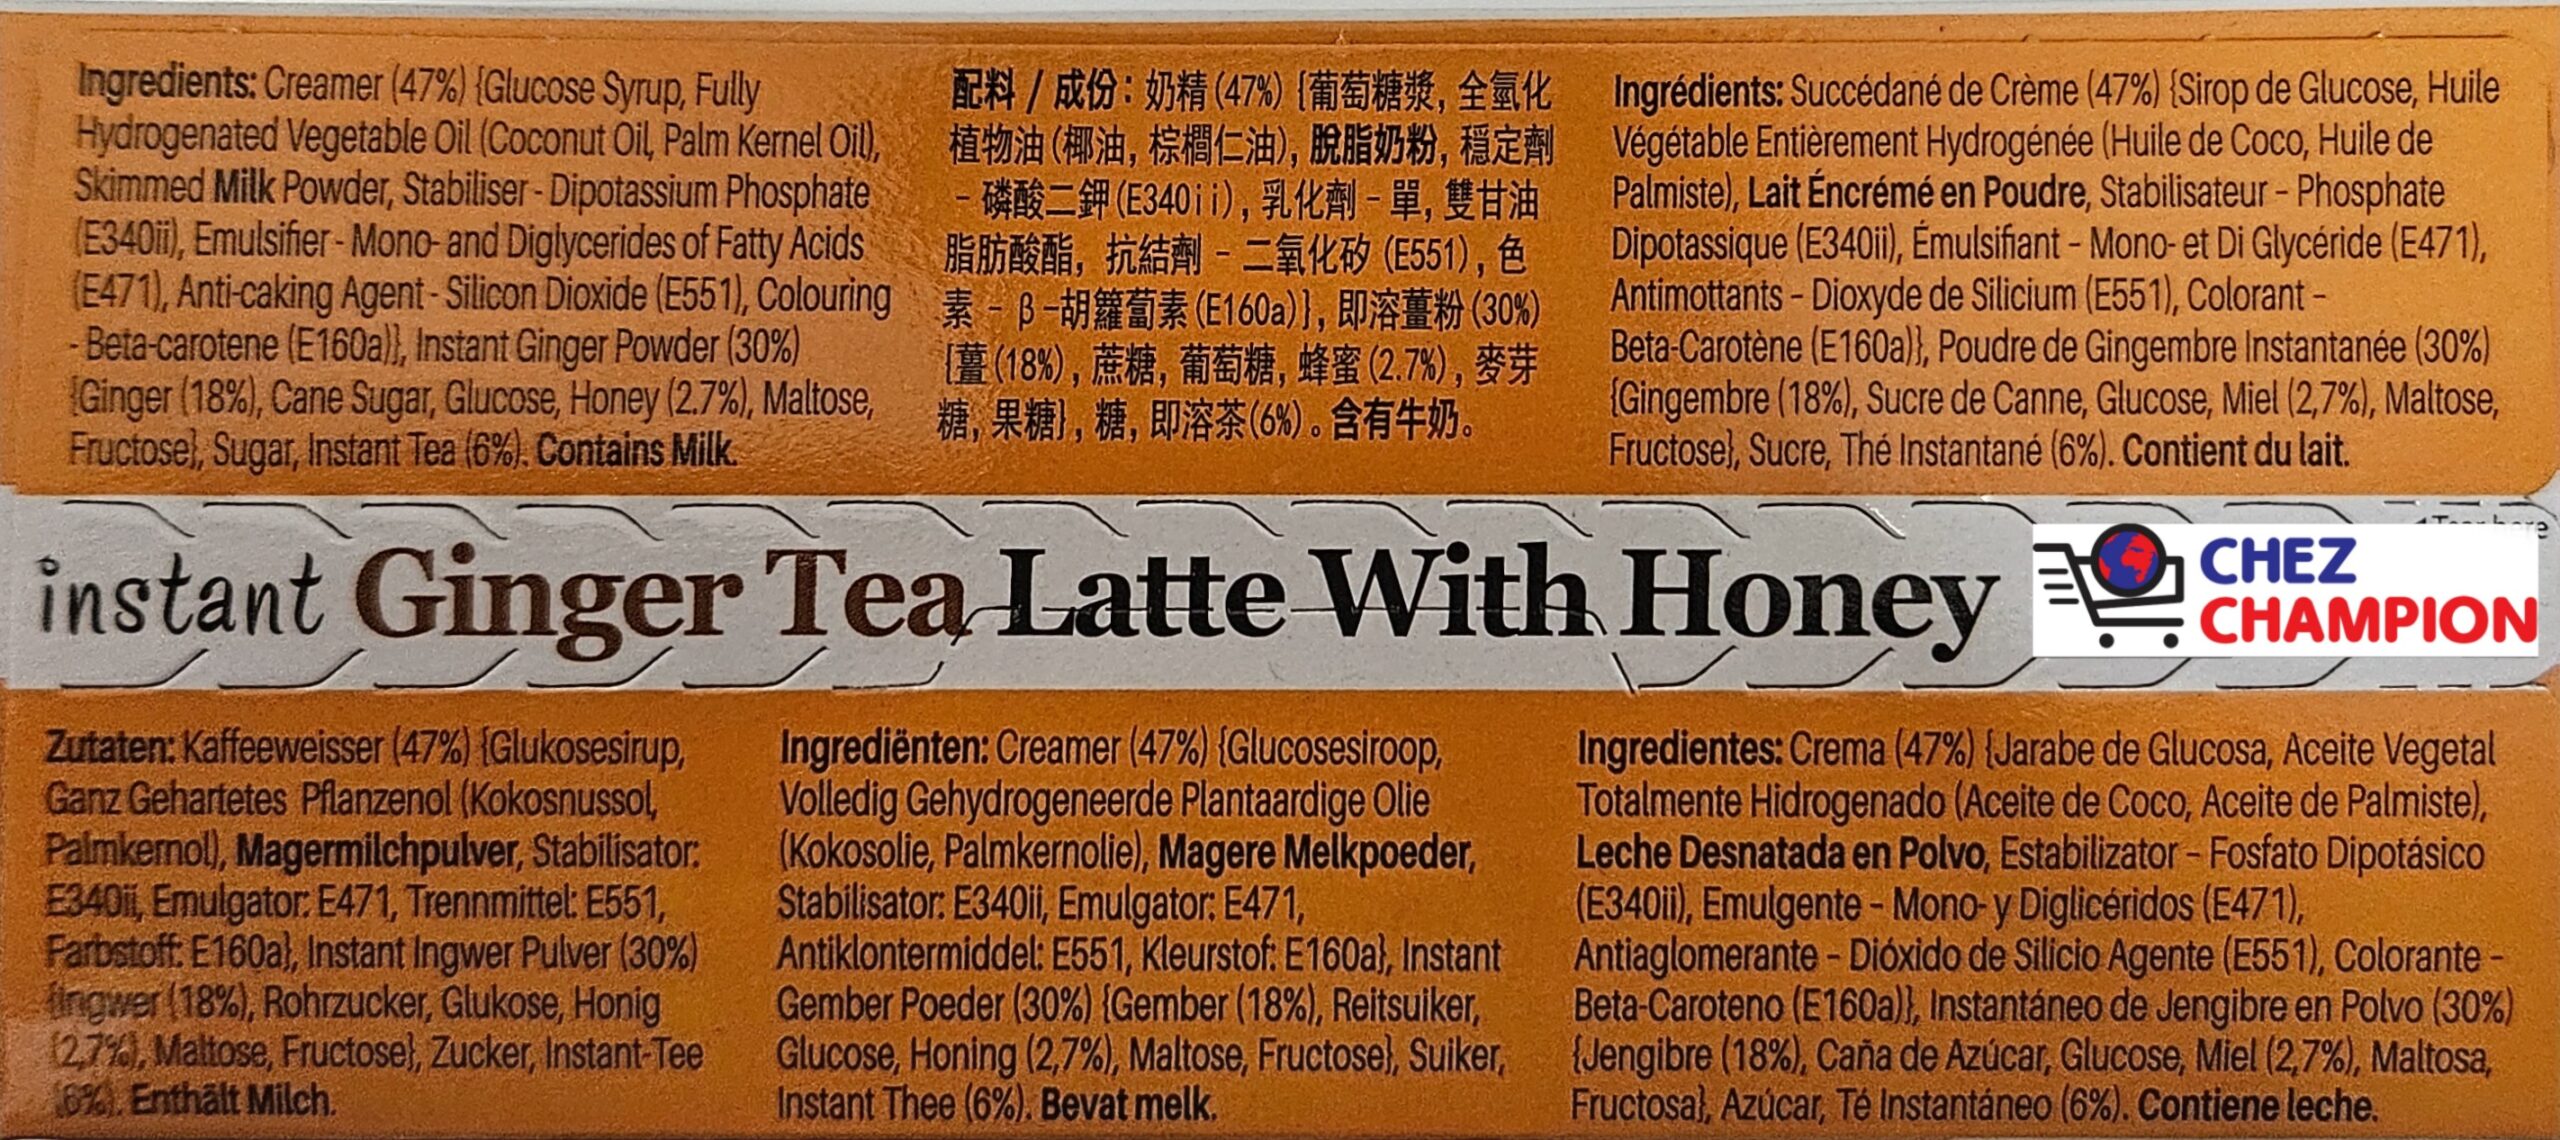 Gold kili instant ginger tea latte with honey – thé latte gingembre instantané au miel – 10x25g – 250g